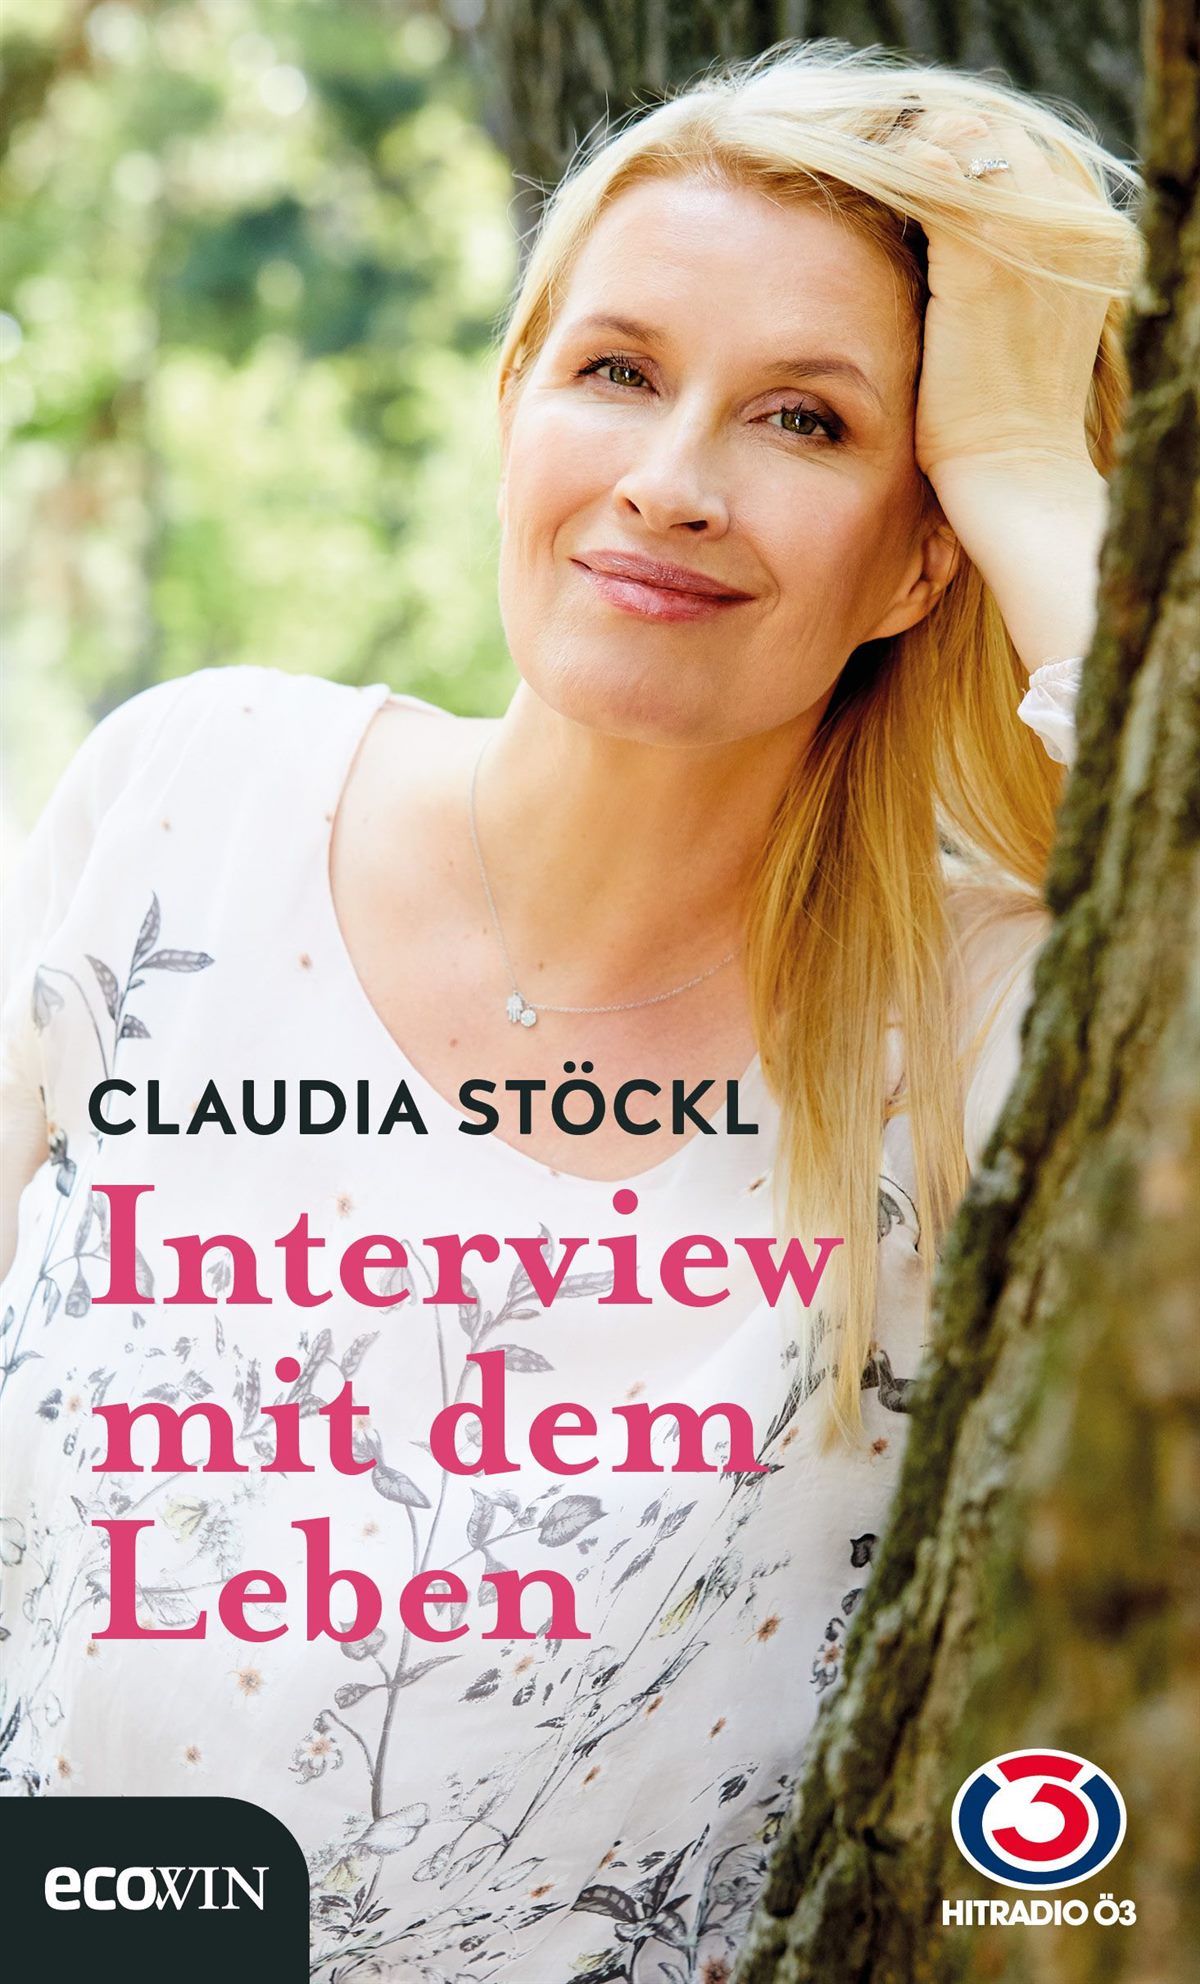 Das neue Buch von Claudia Stöckl, Interview mit dem Leben